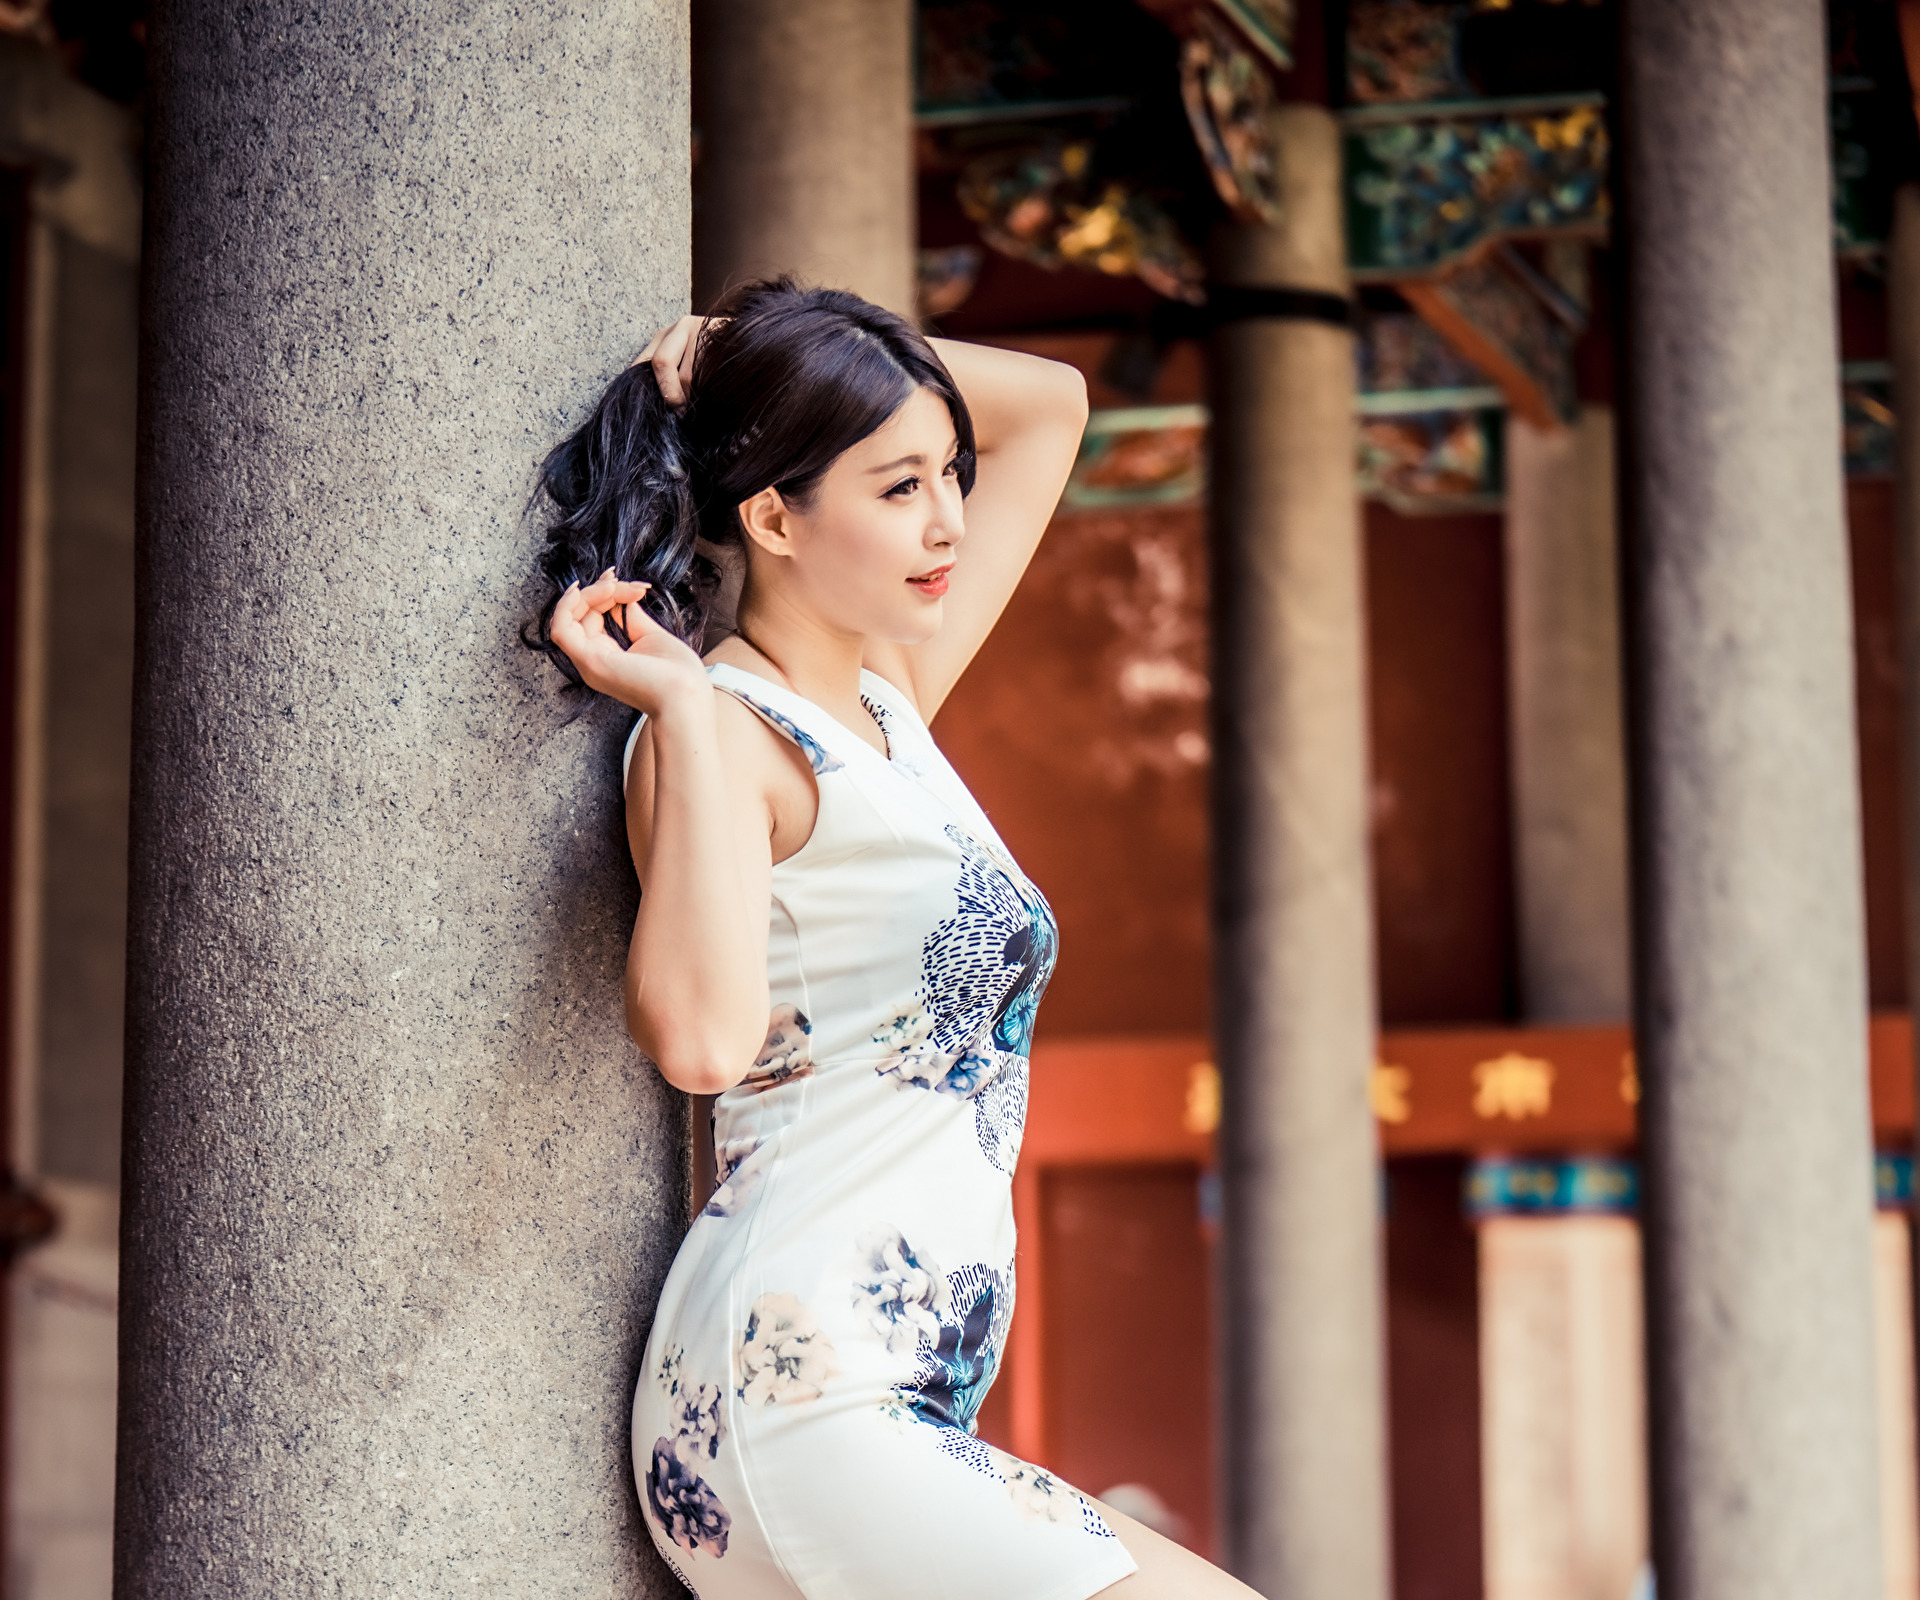 Азиатка платье ножки. Азиатка позирует в платье. Азиатское позирование. Азиатские девушки ноги модели.